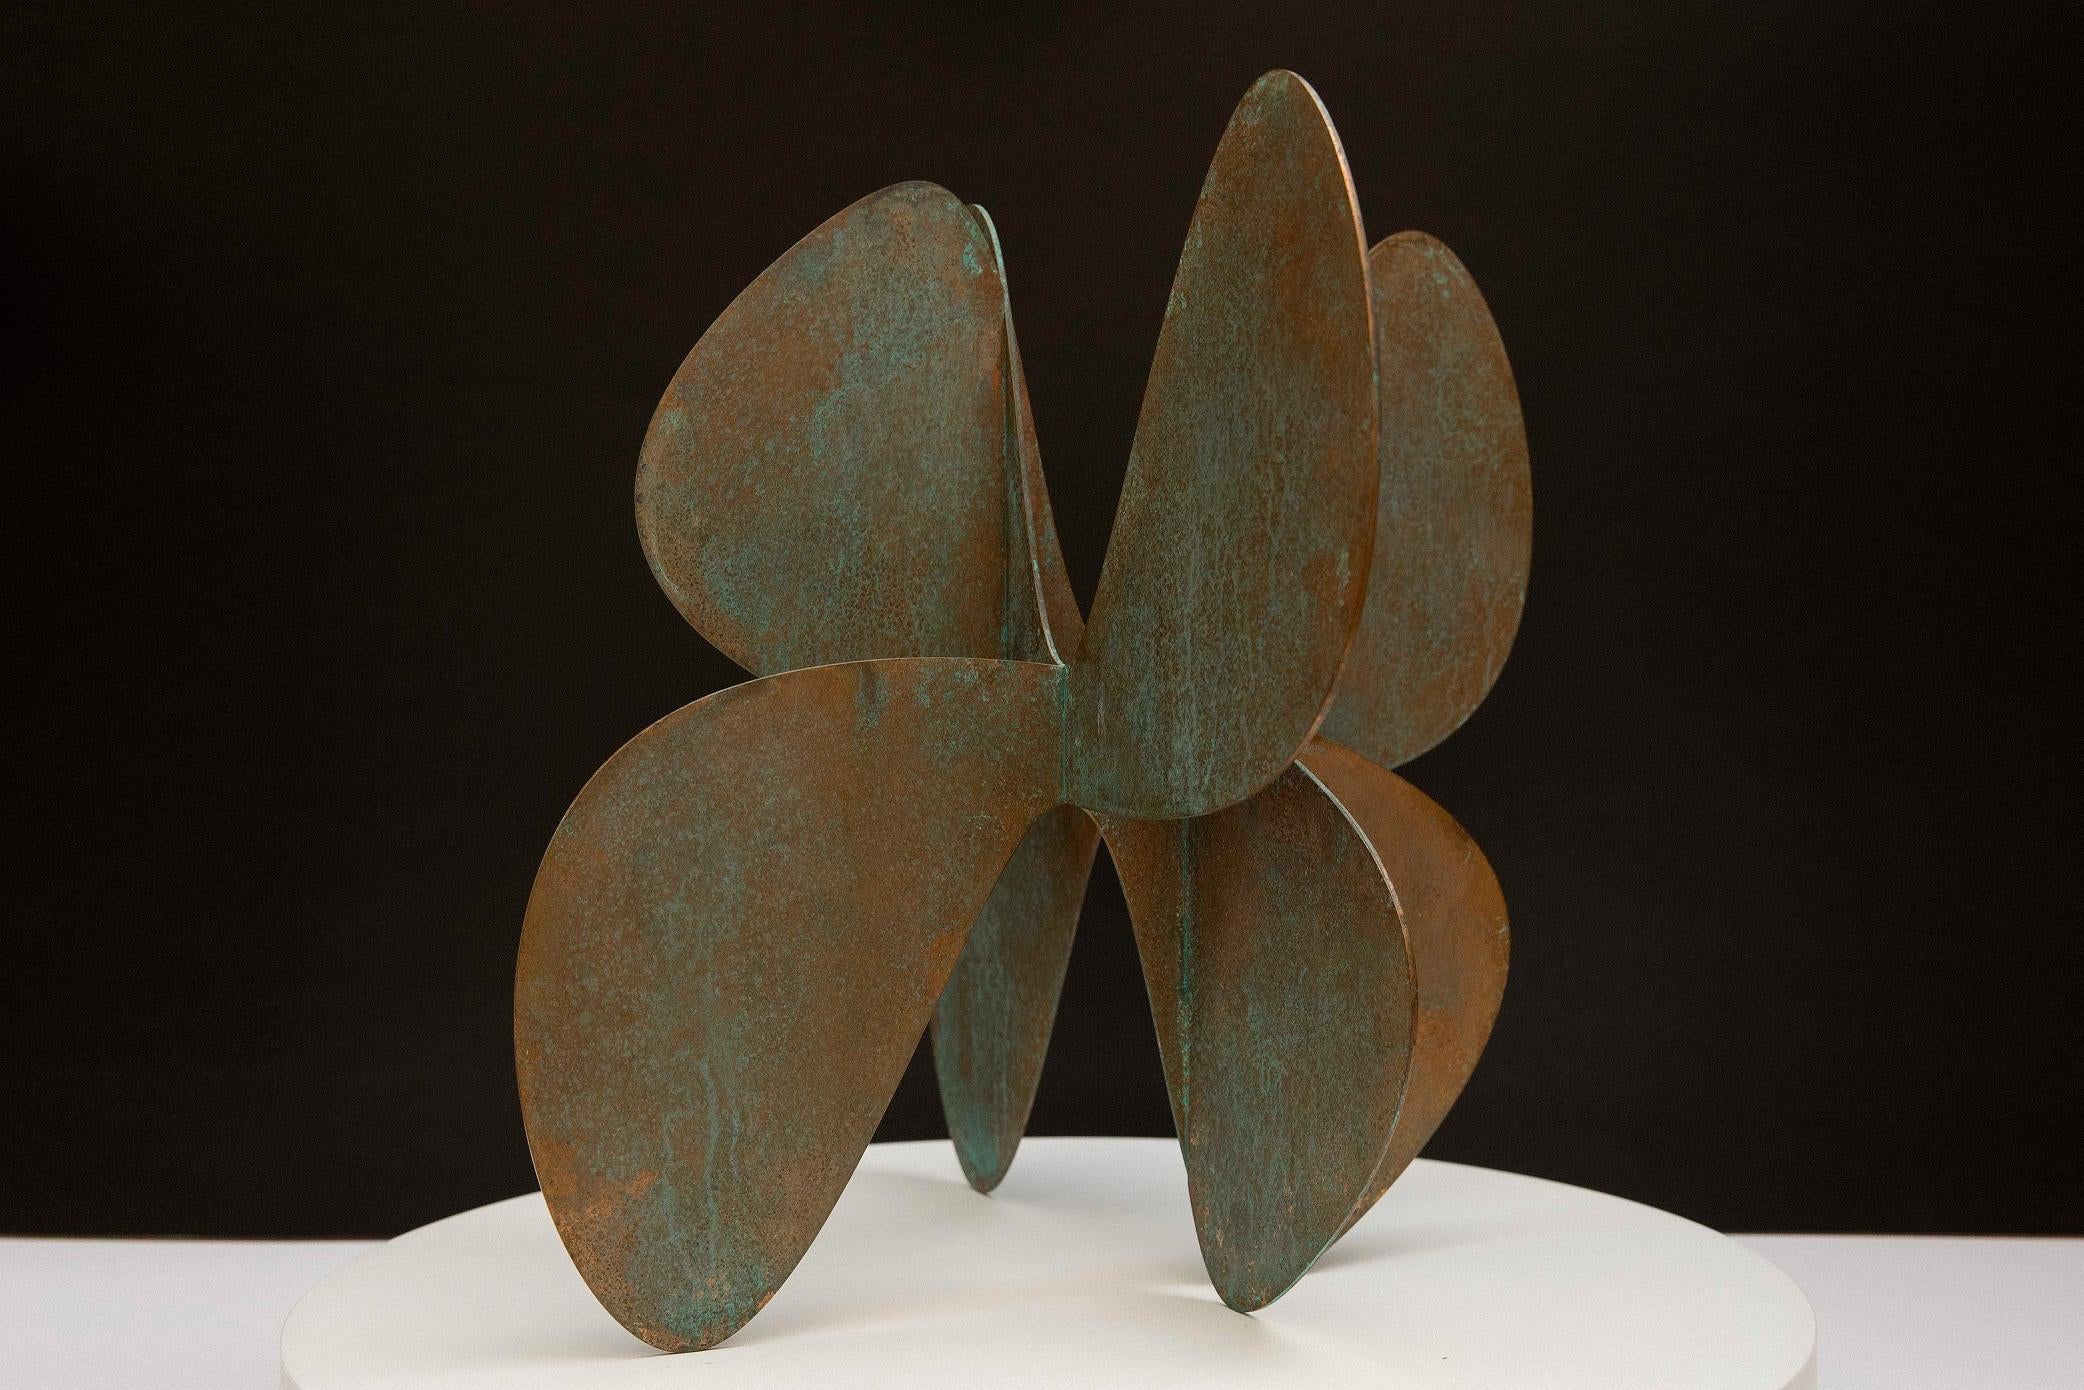 Barricada #11 b S est une sculpture en bronze de l'artiste vénézuélien contemporain Alejandro Vega Beuvrin. Les plaques de bronze ont une épaisseur de 3 mm. Edition limitée à 5 + 3 A.P.
Dans un style minimaliste et influencé par ses connaissances